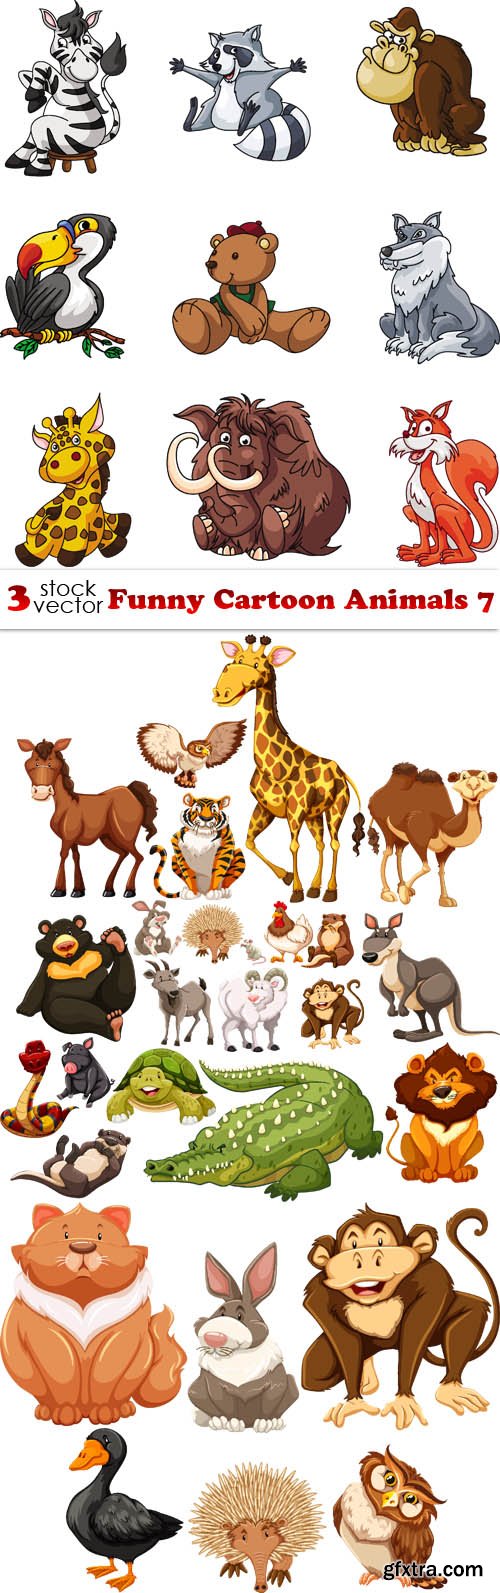 Vectors - Funny Cartoon Animals 7